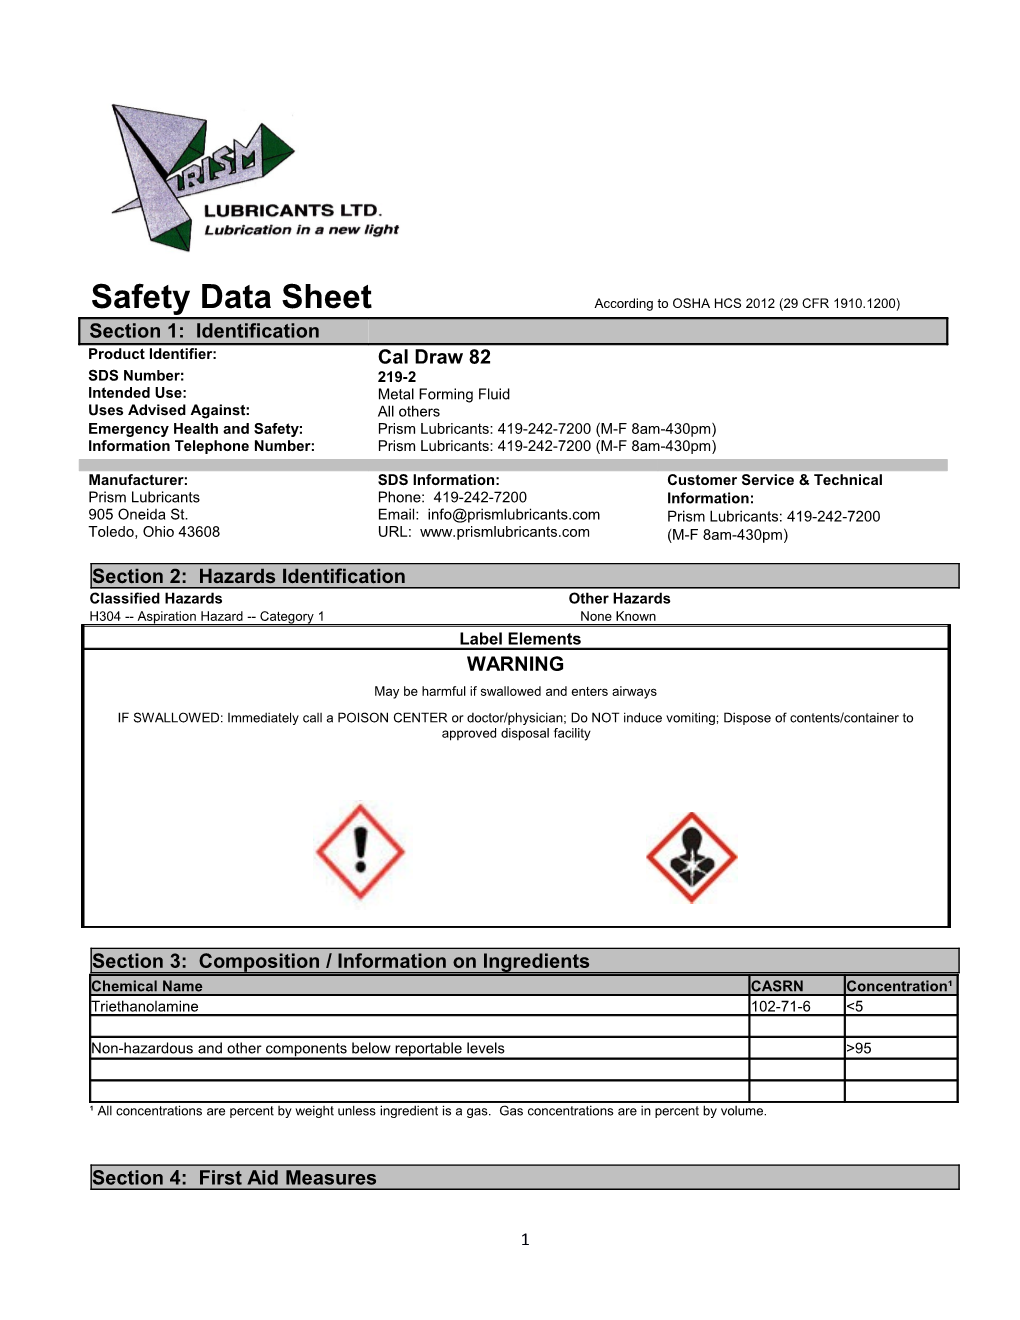 Safety Data Sheet According to OSHA HCS 2012 (29 CFR 1910.1200)